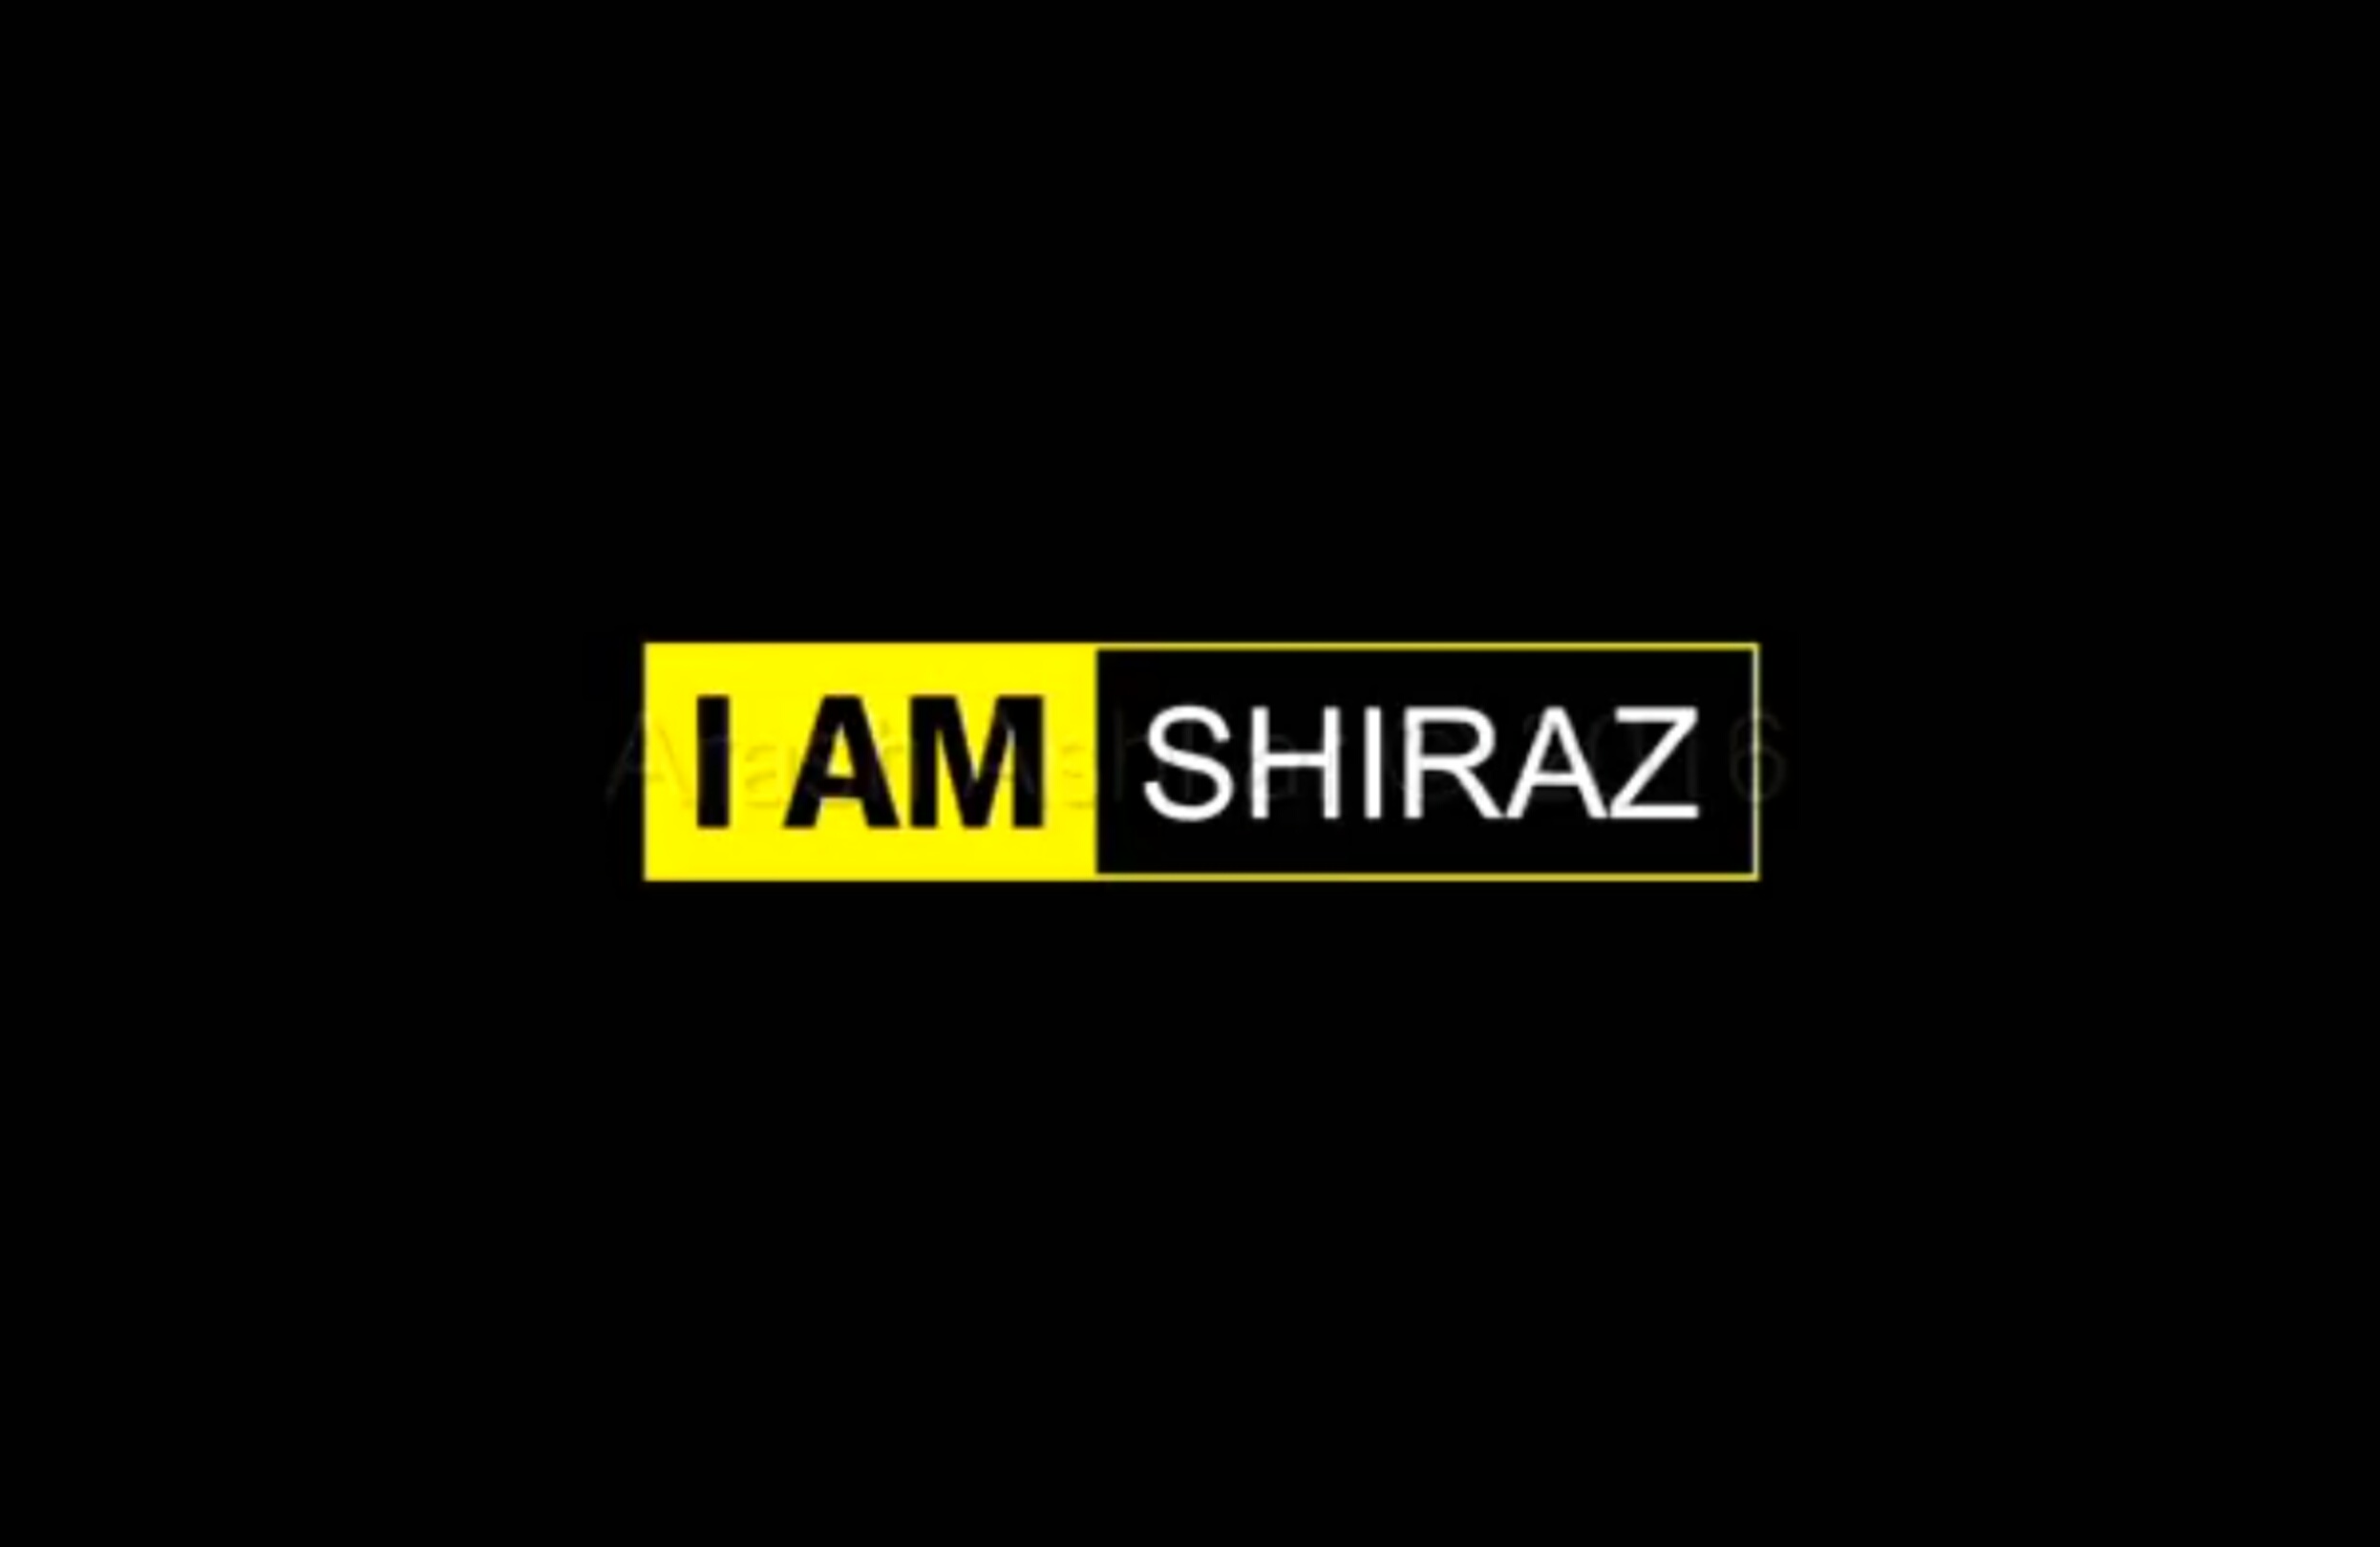 I AM SHIRAZ، ویدیویی که با دیدن آن احساس غرور خواهید کرد